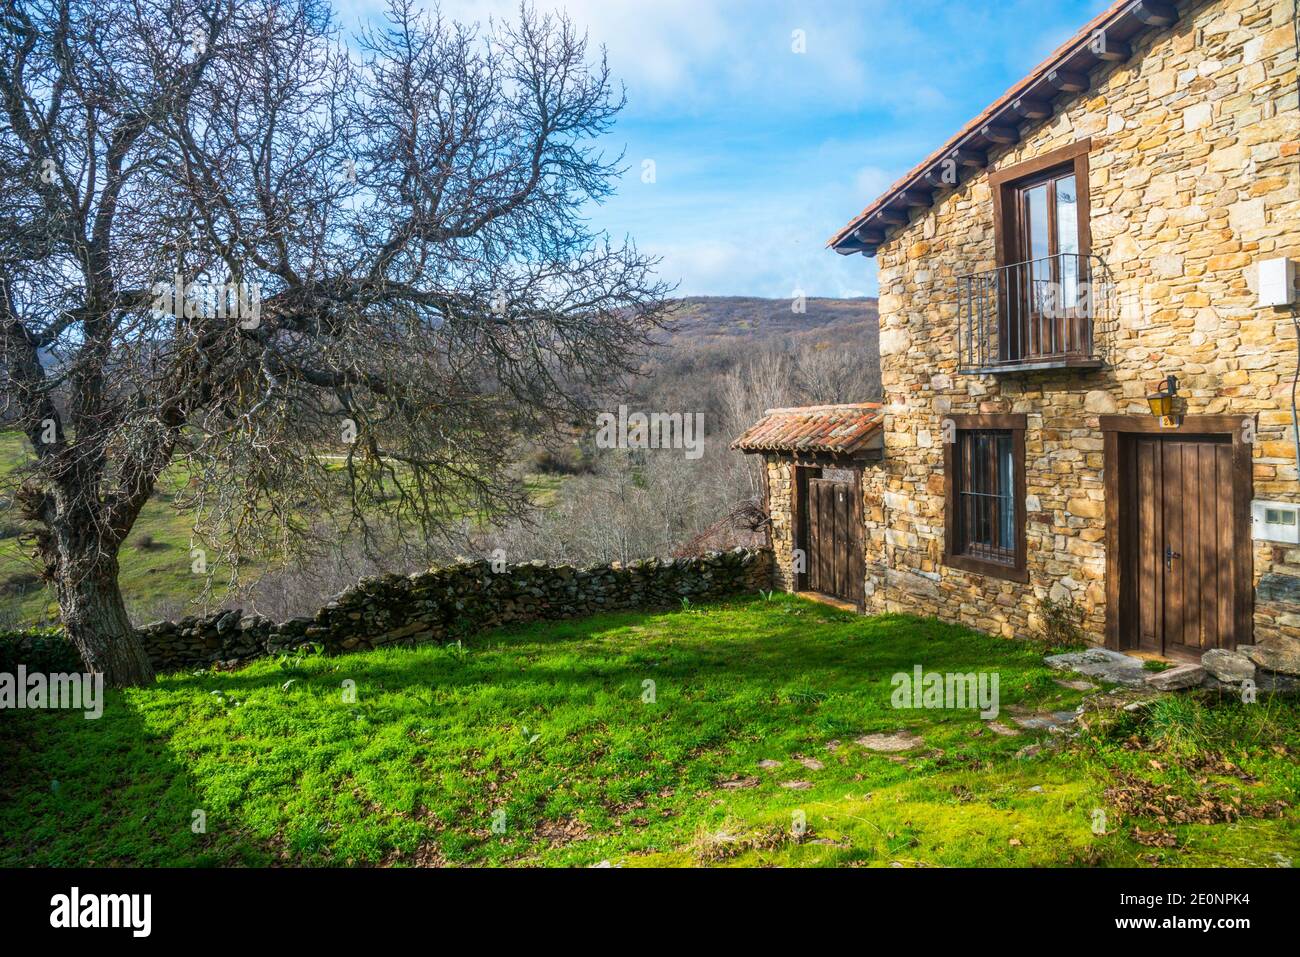 House and landscape. Horcajuelo de la Sierra, Madrid province, Spain. Stock Photo